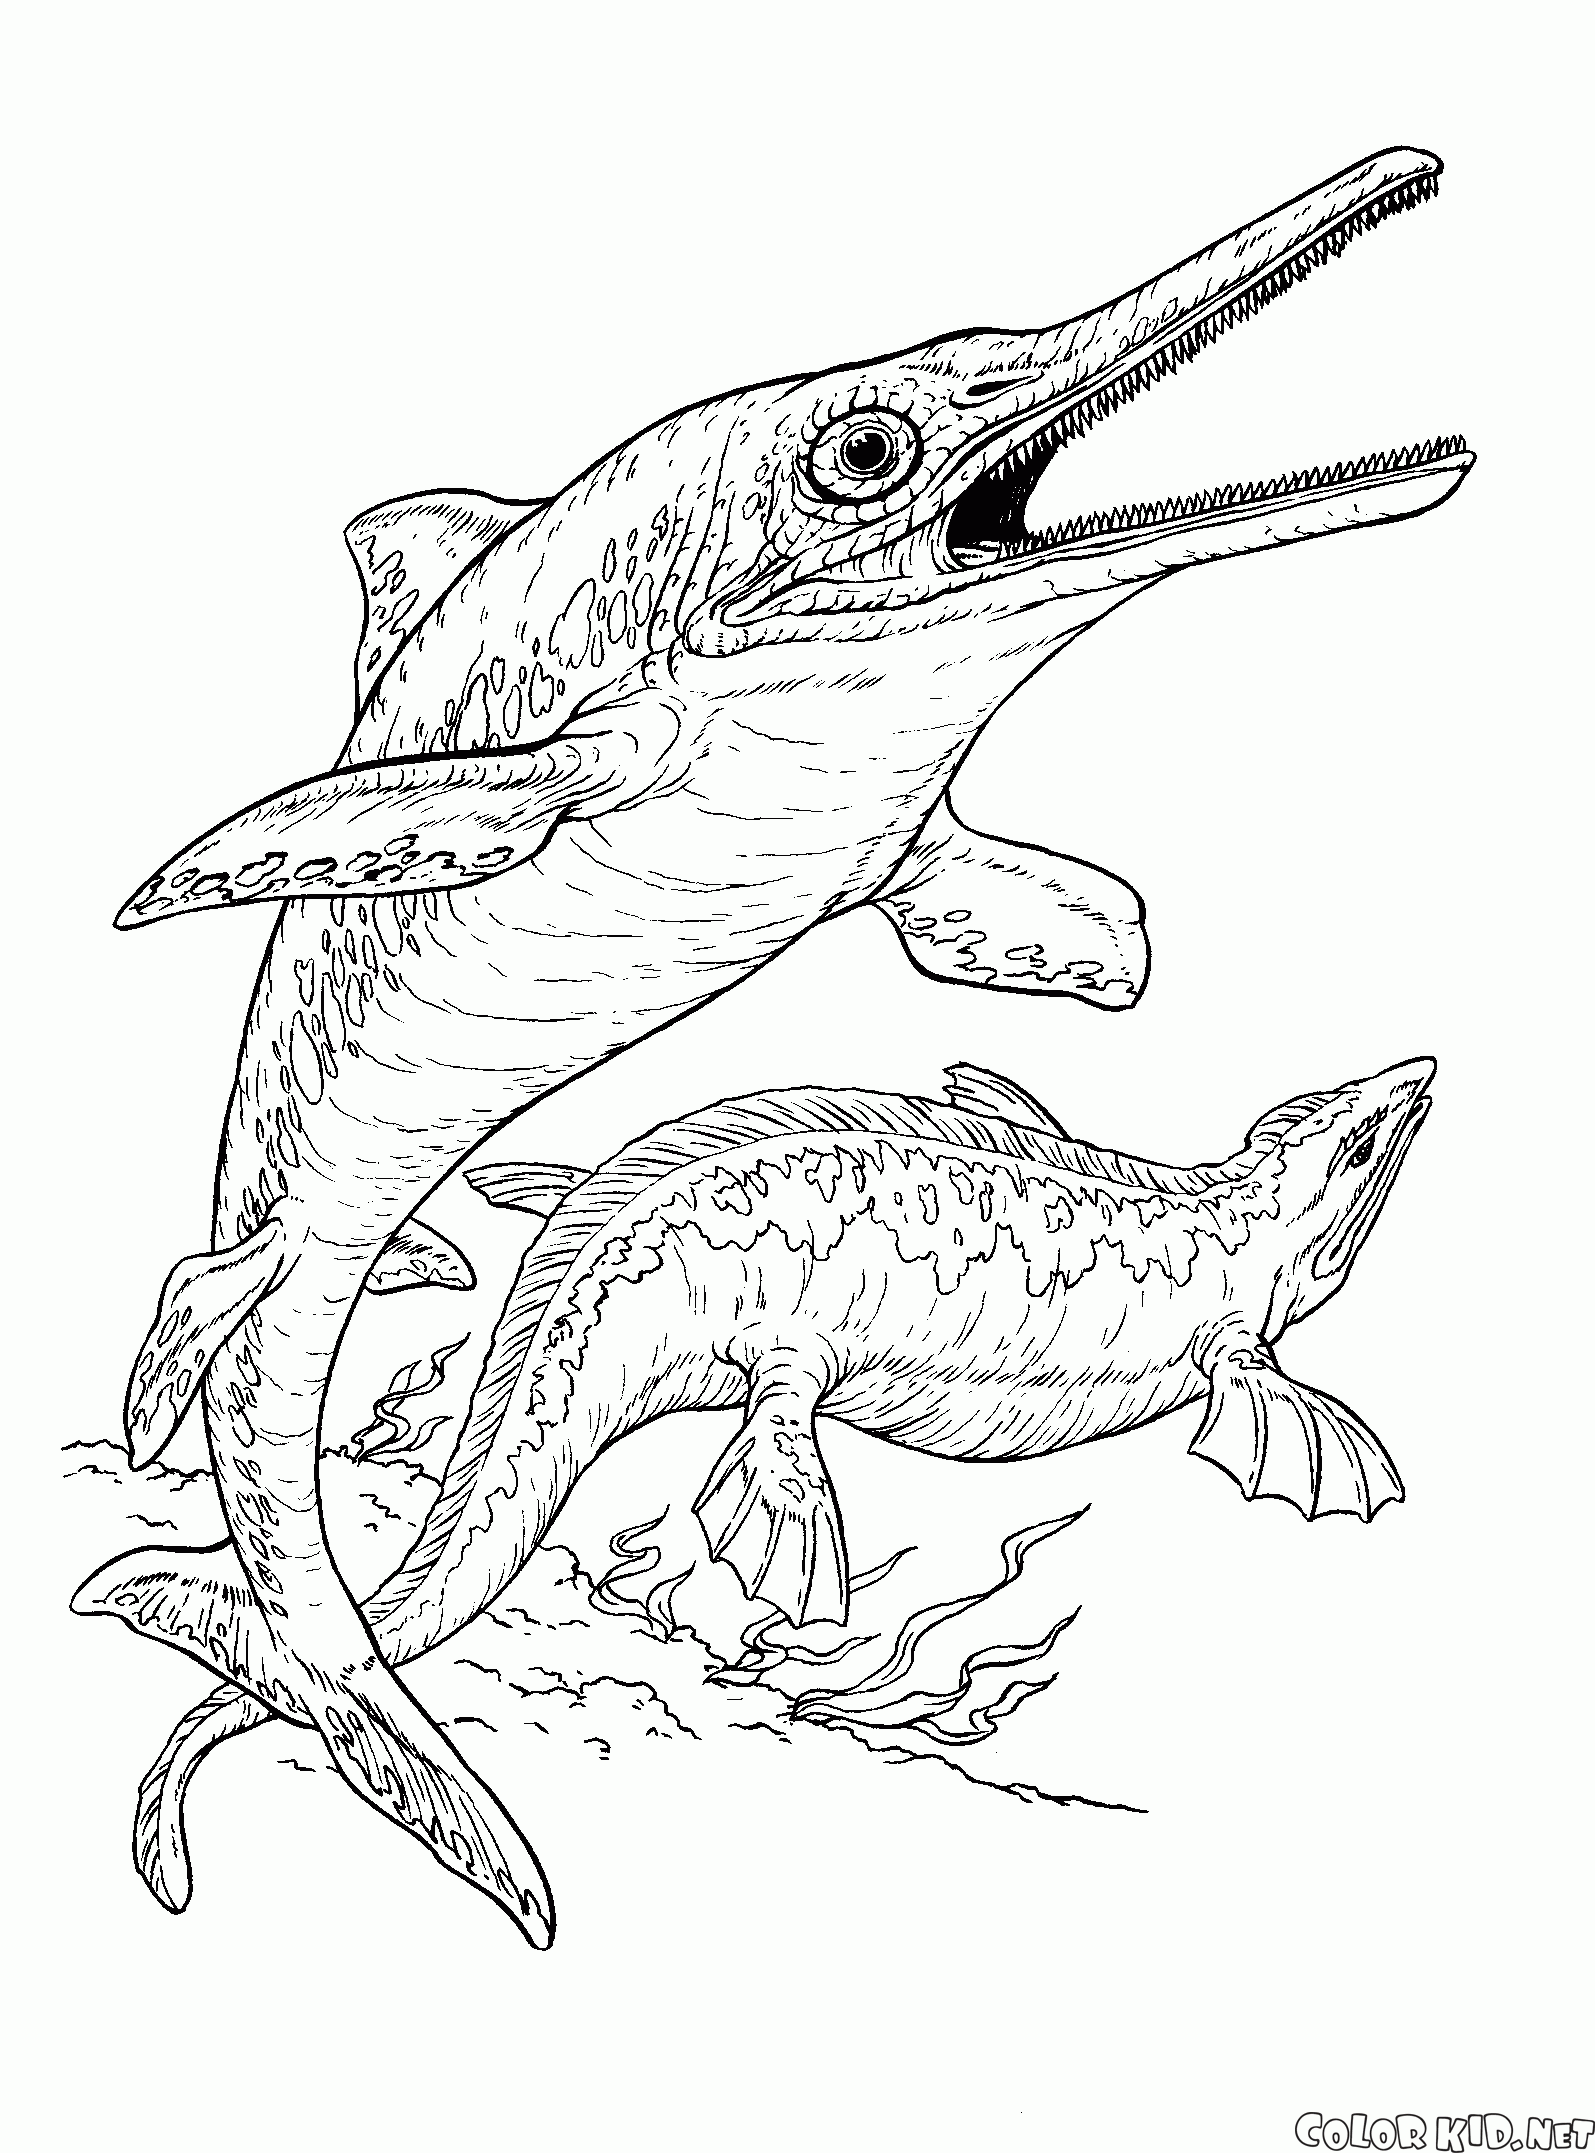 Ichthyosaur et plésiosaure